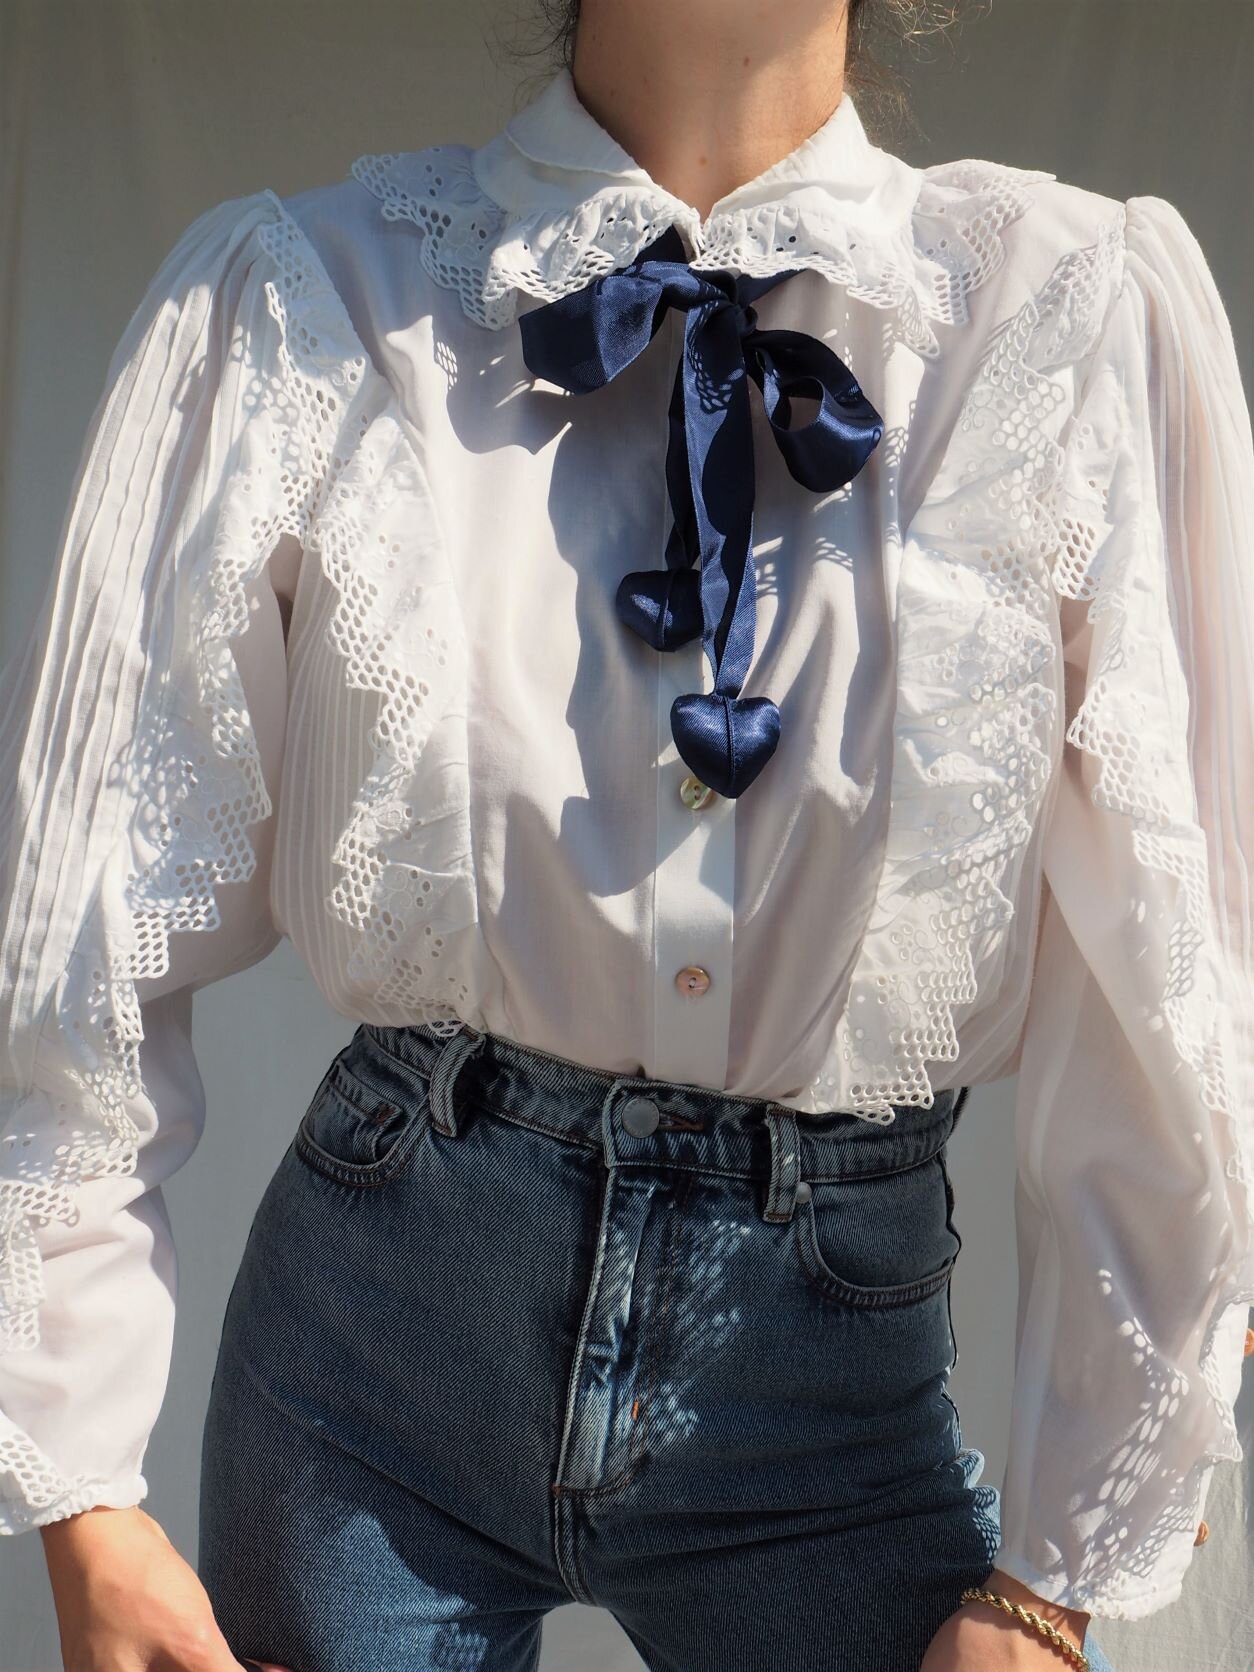 Vintage cotton blouse